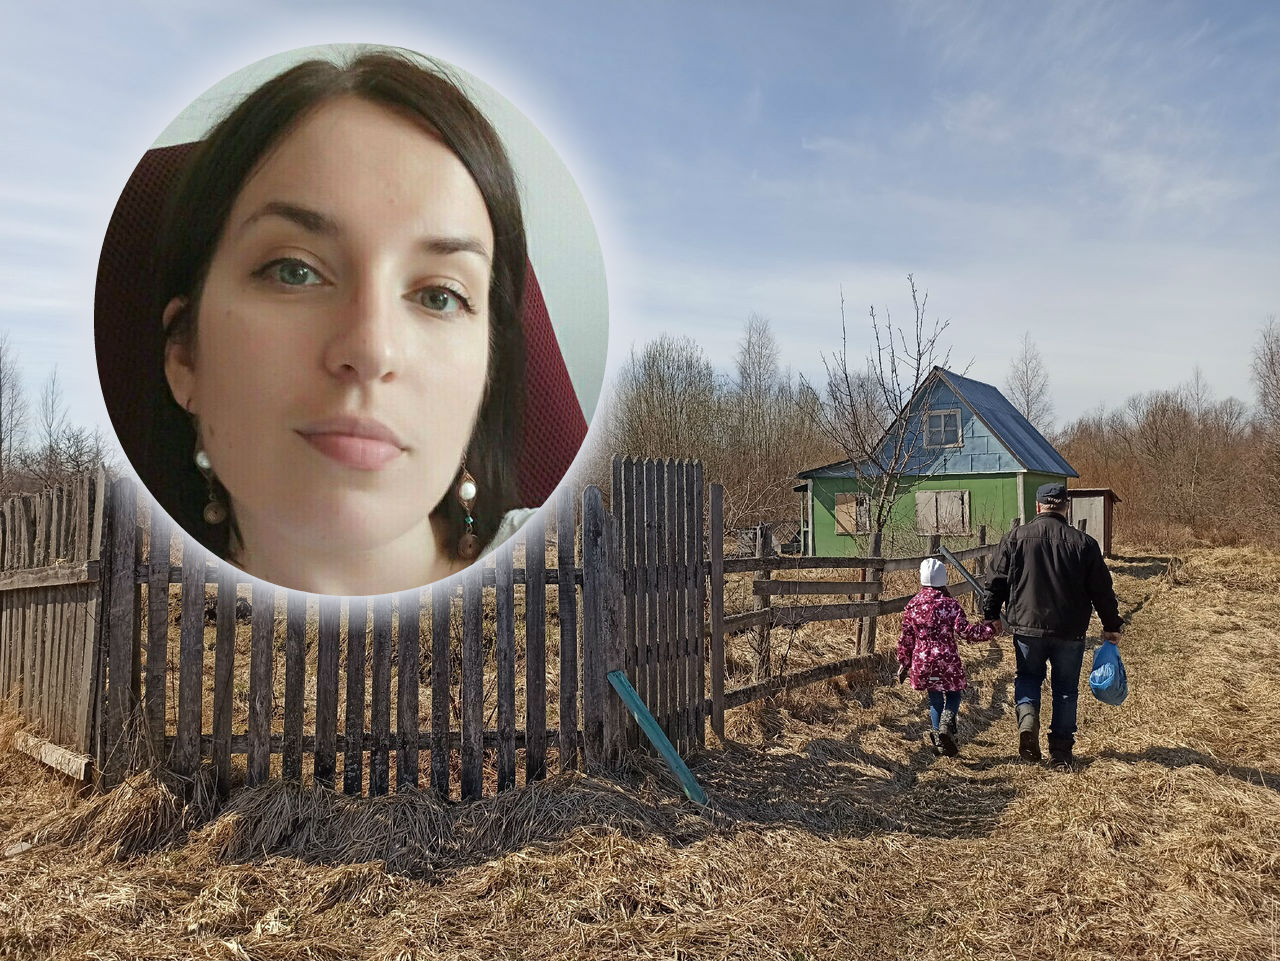 "10 тысяч на ребенка уже дали": мама из Ярославля поделилась секретом быстрого получения денег